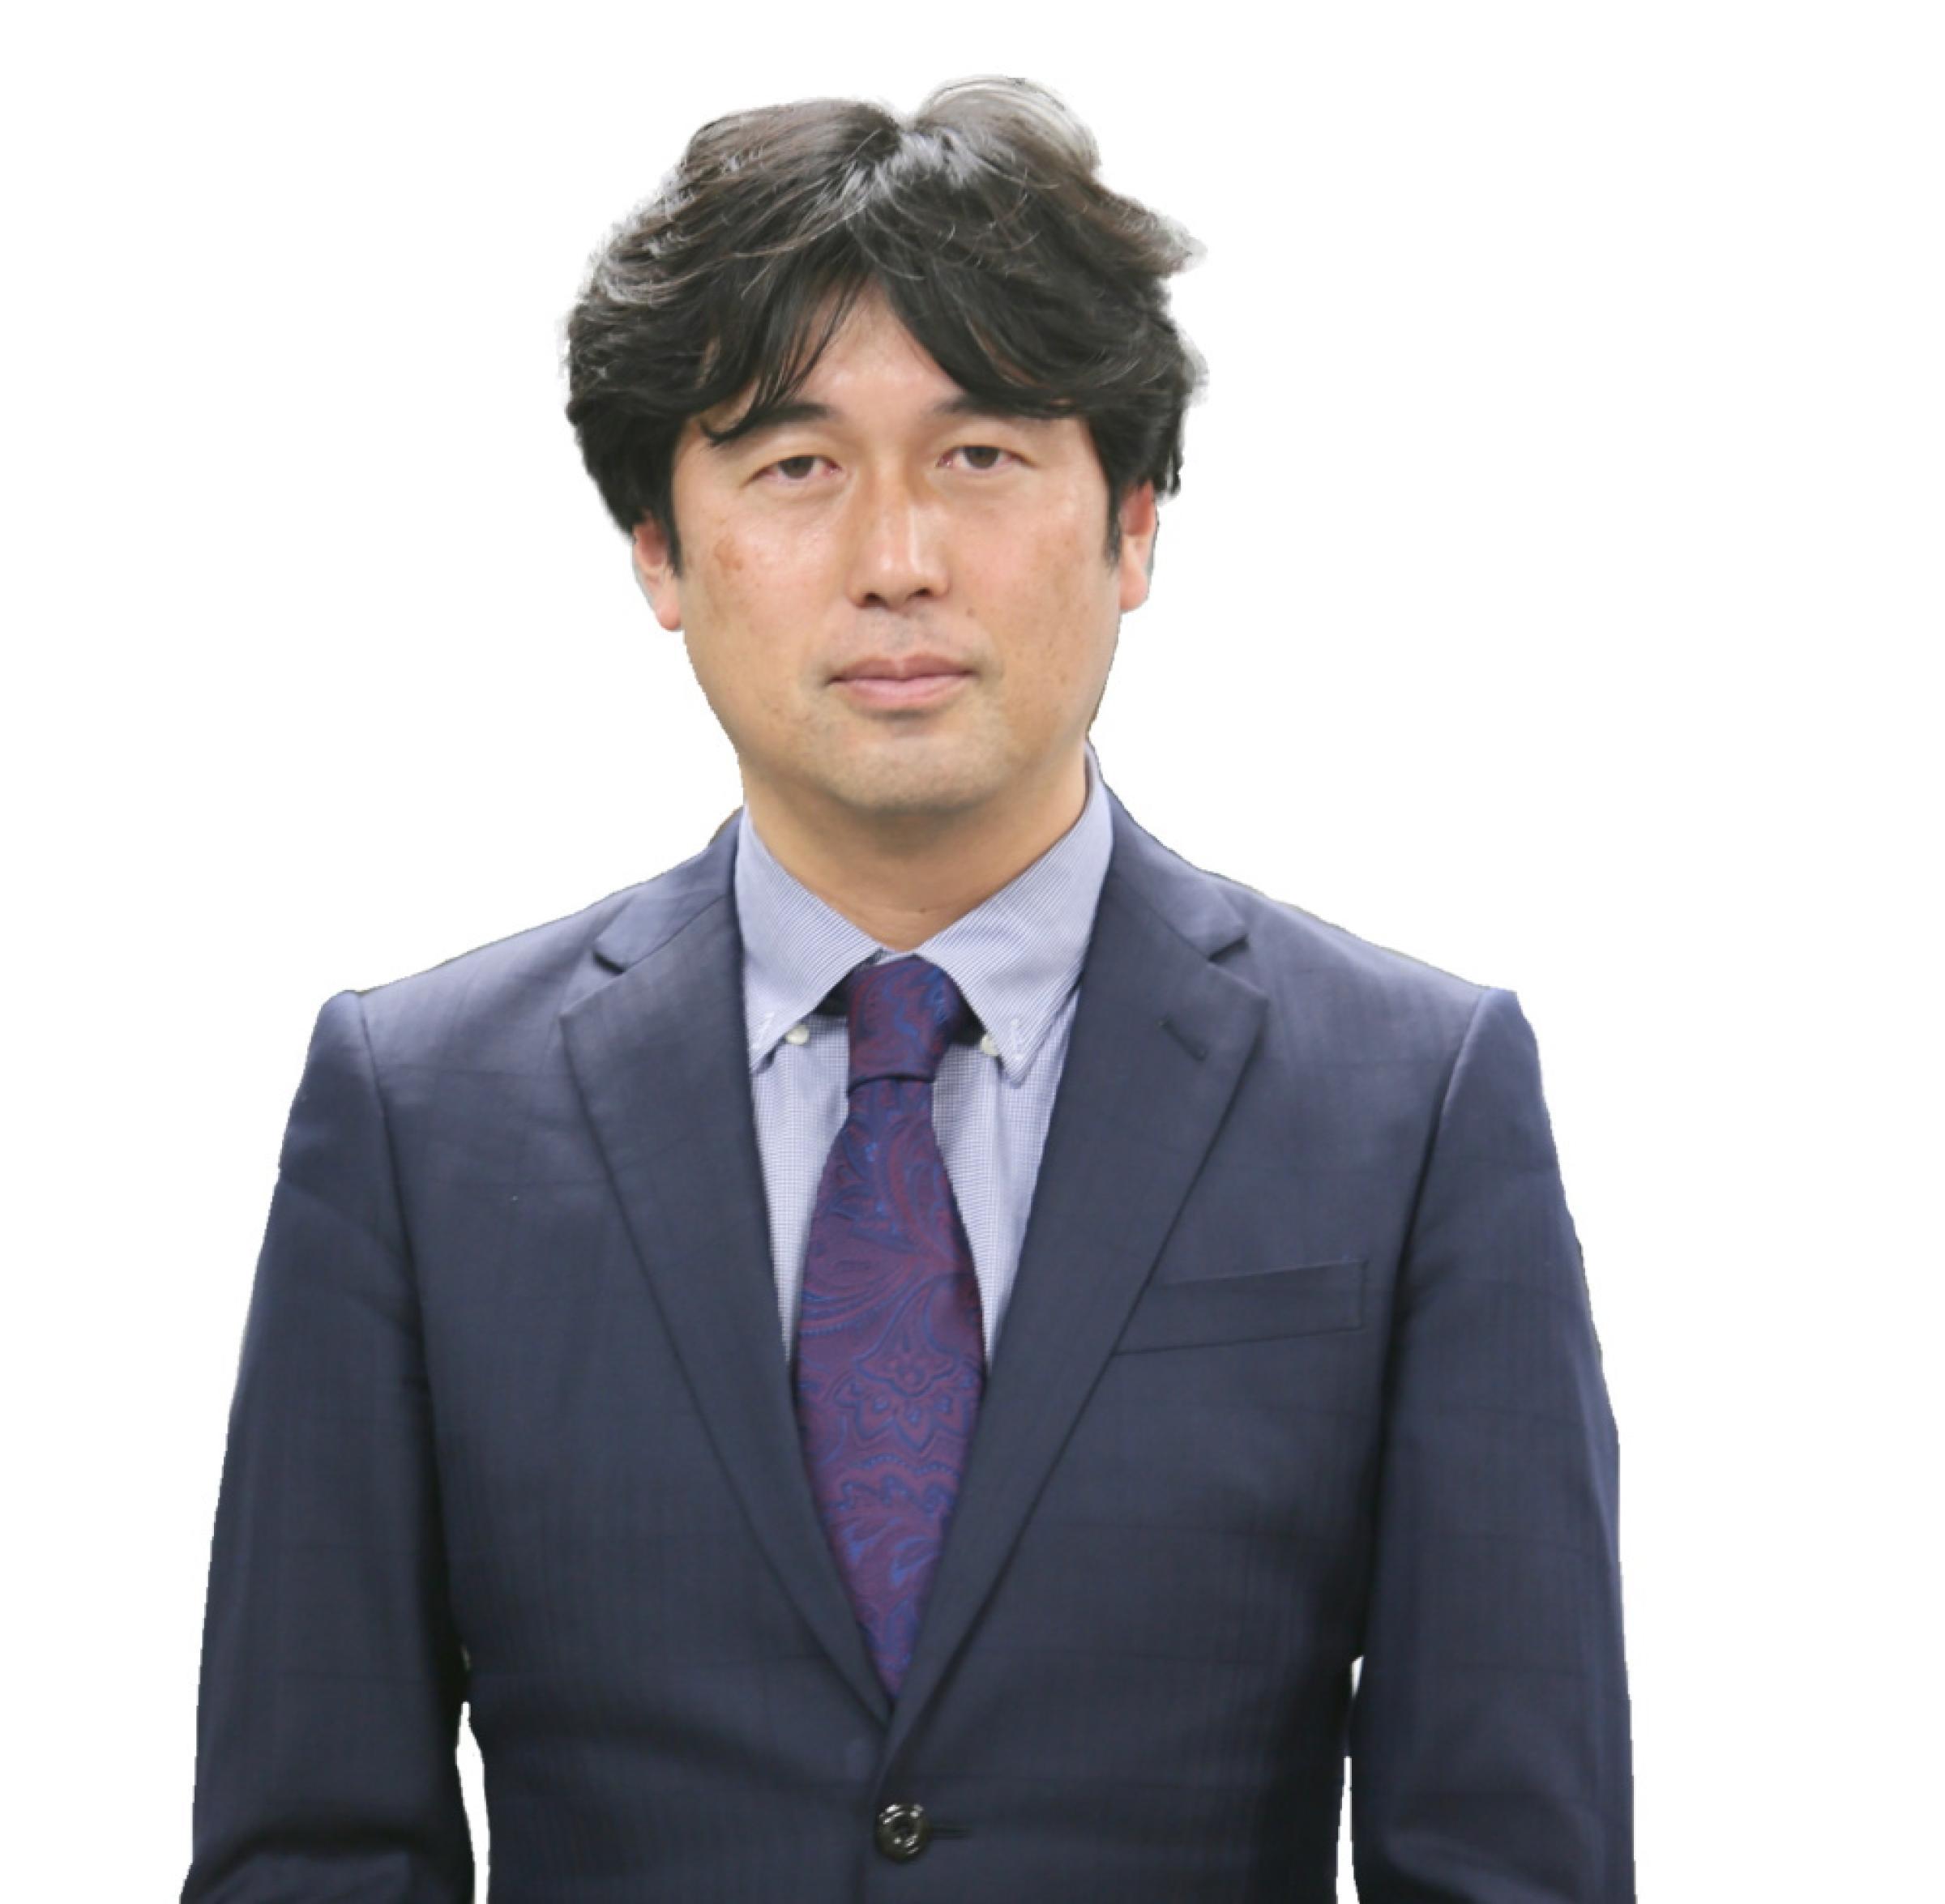  Prof. FUDEYASU Hironori